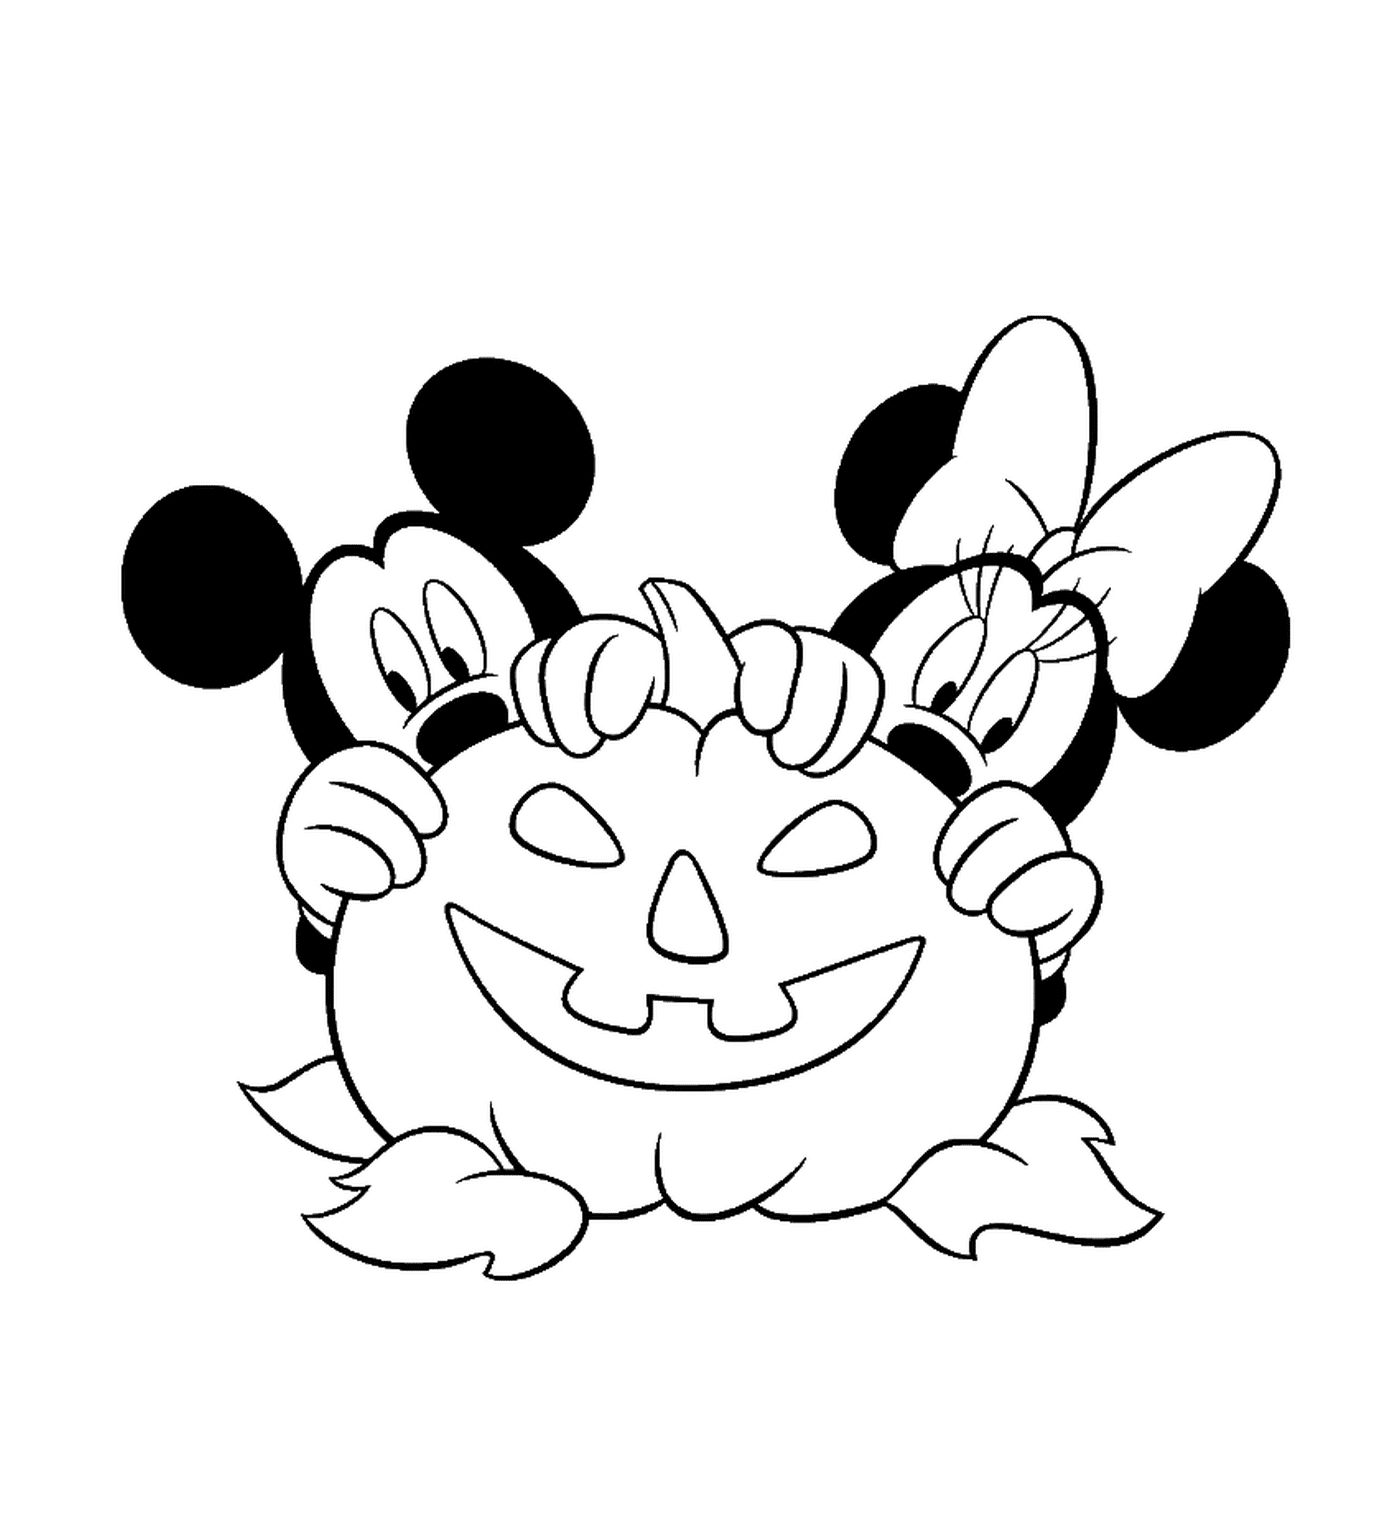  Mickey y Minnie escondidos detrás de una calabaza 